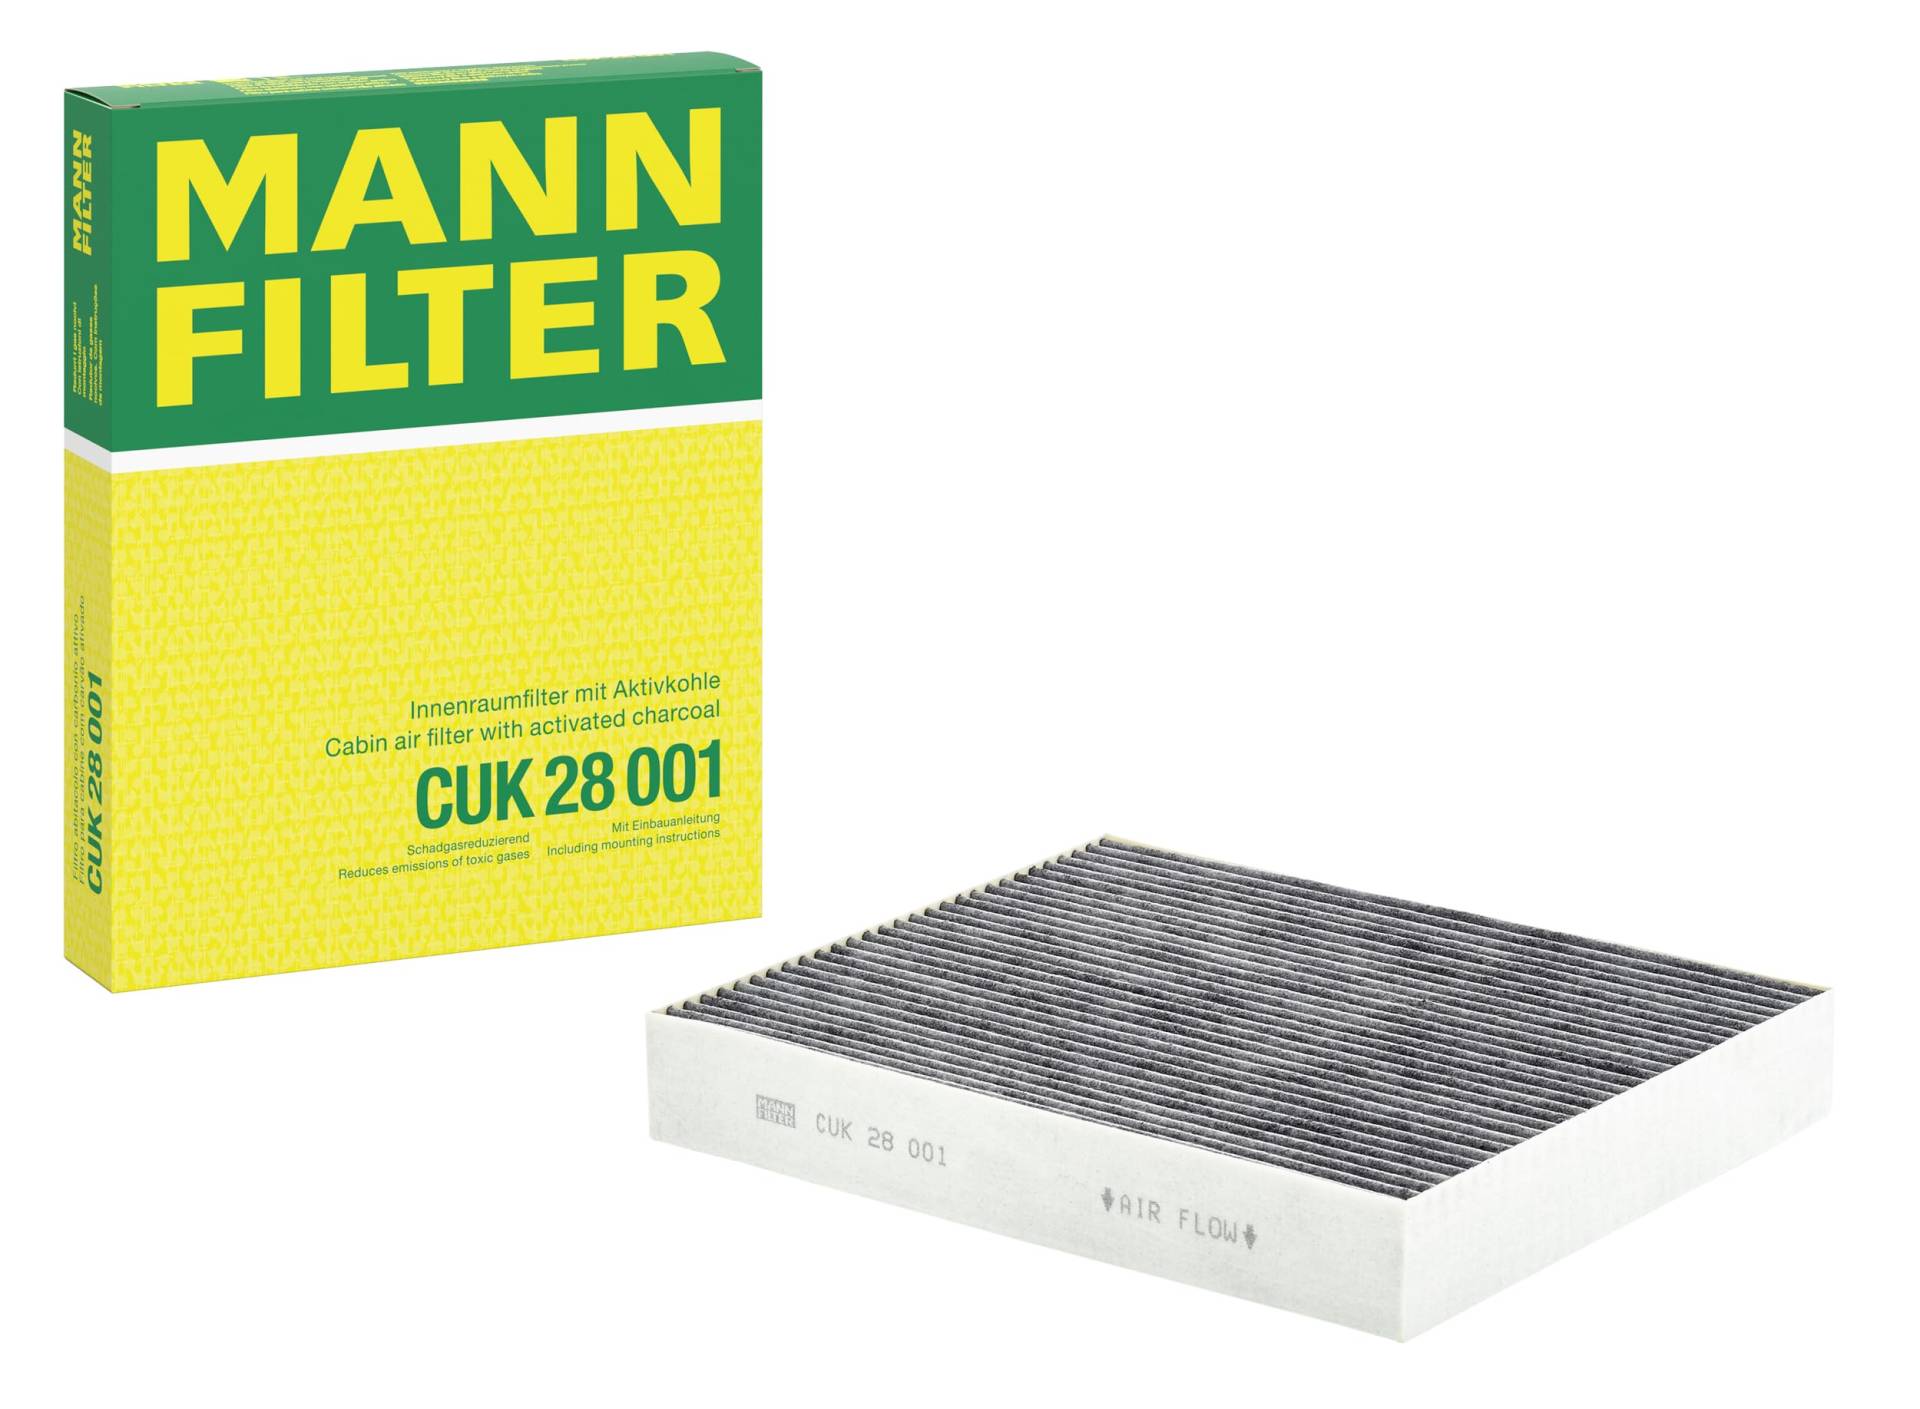 MANN-FILTER CUK 28 001 Innenraumfilter – Pollenfilter mit Aktivkohle – Für PKW von MANN-FILTER